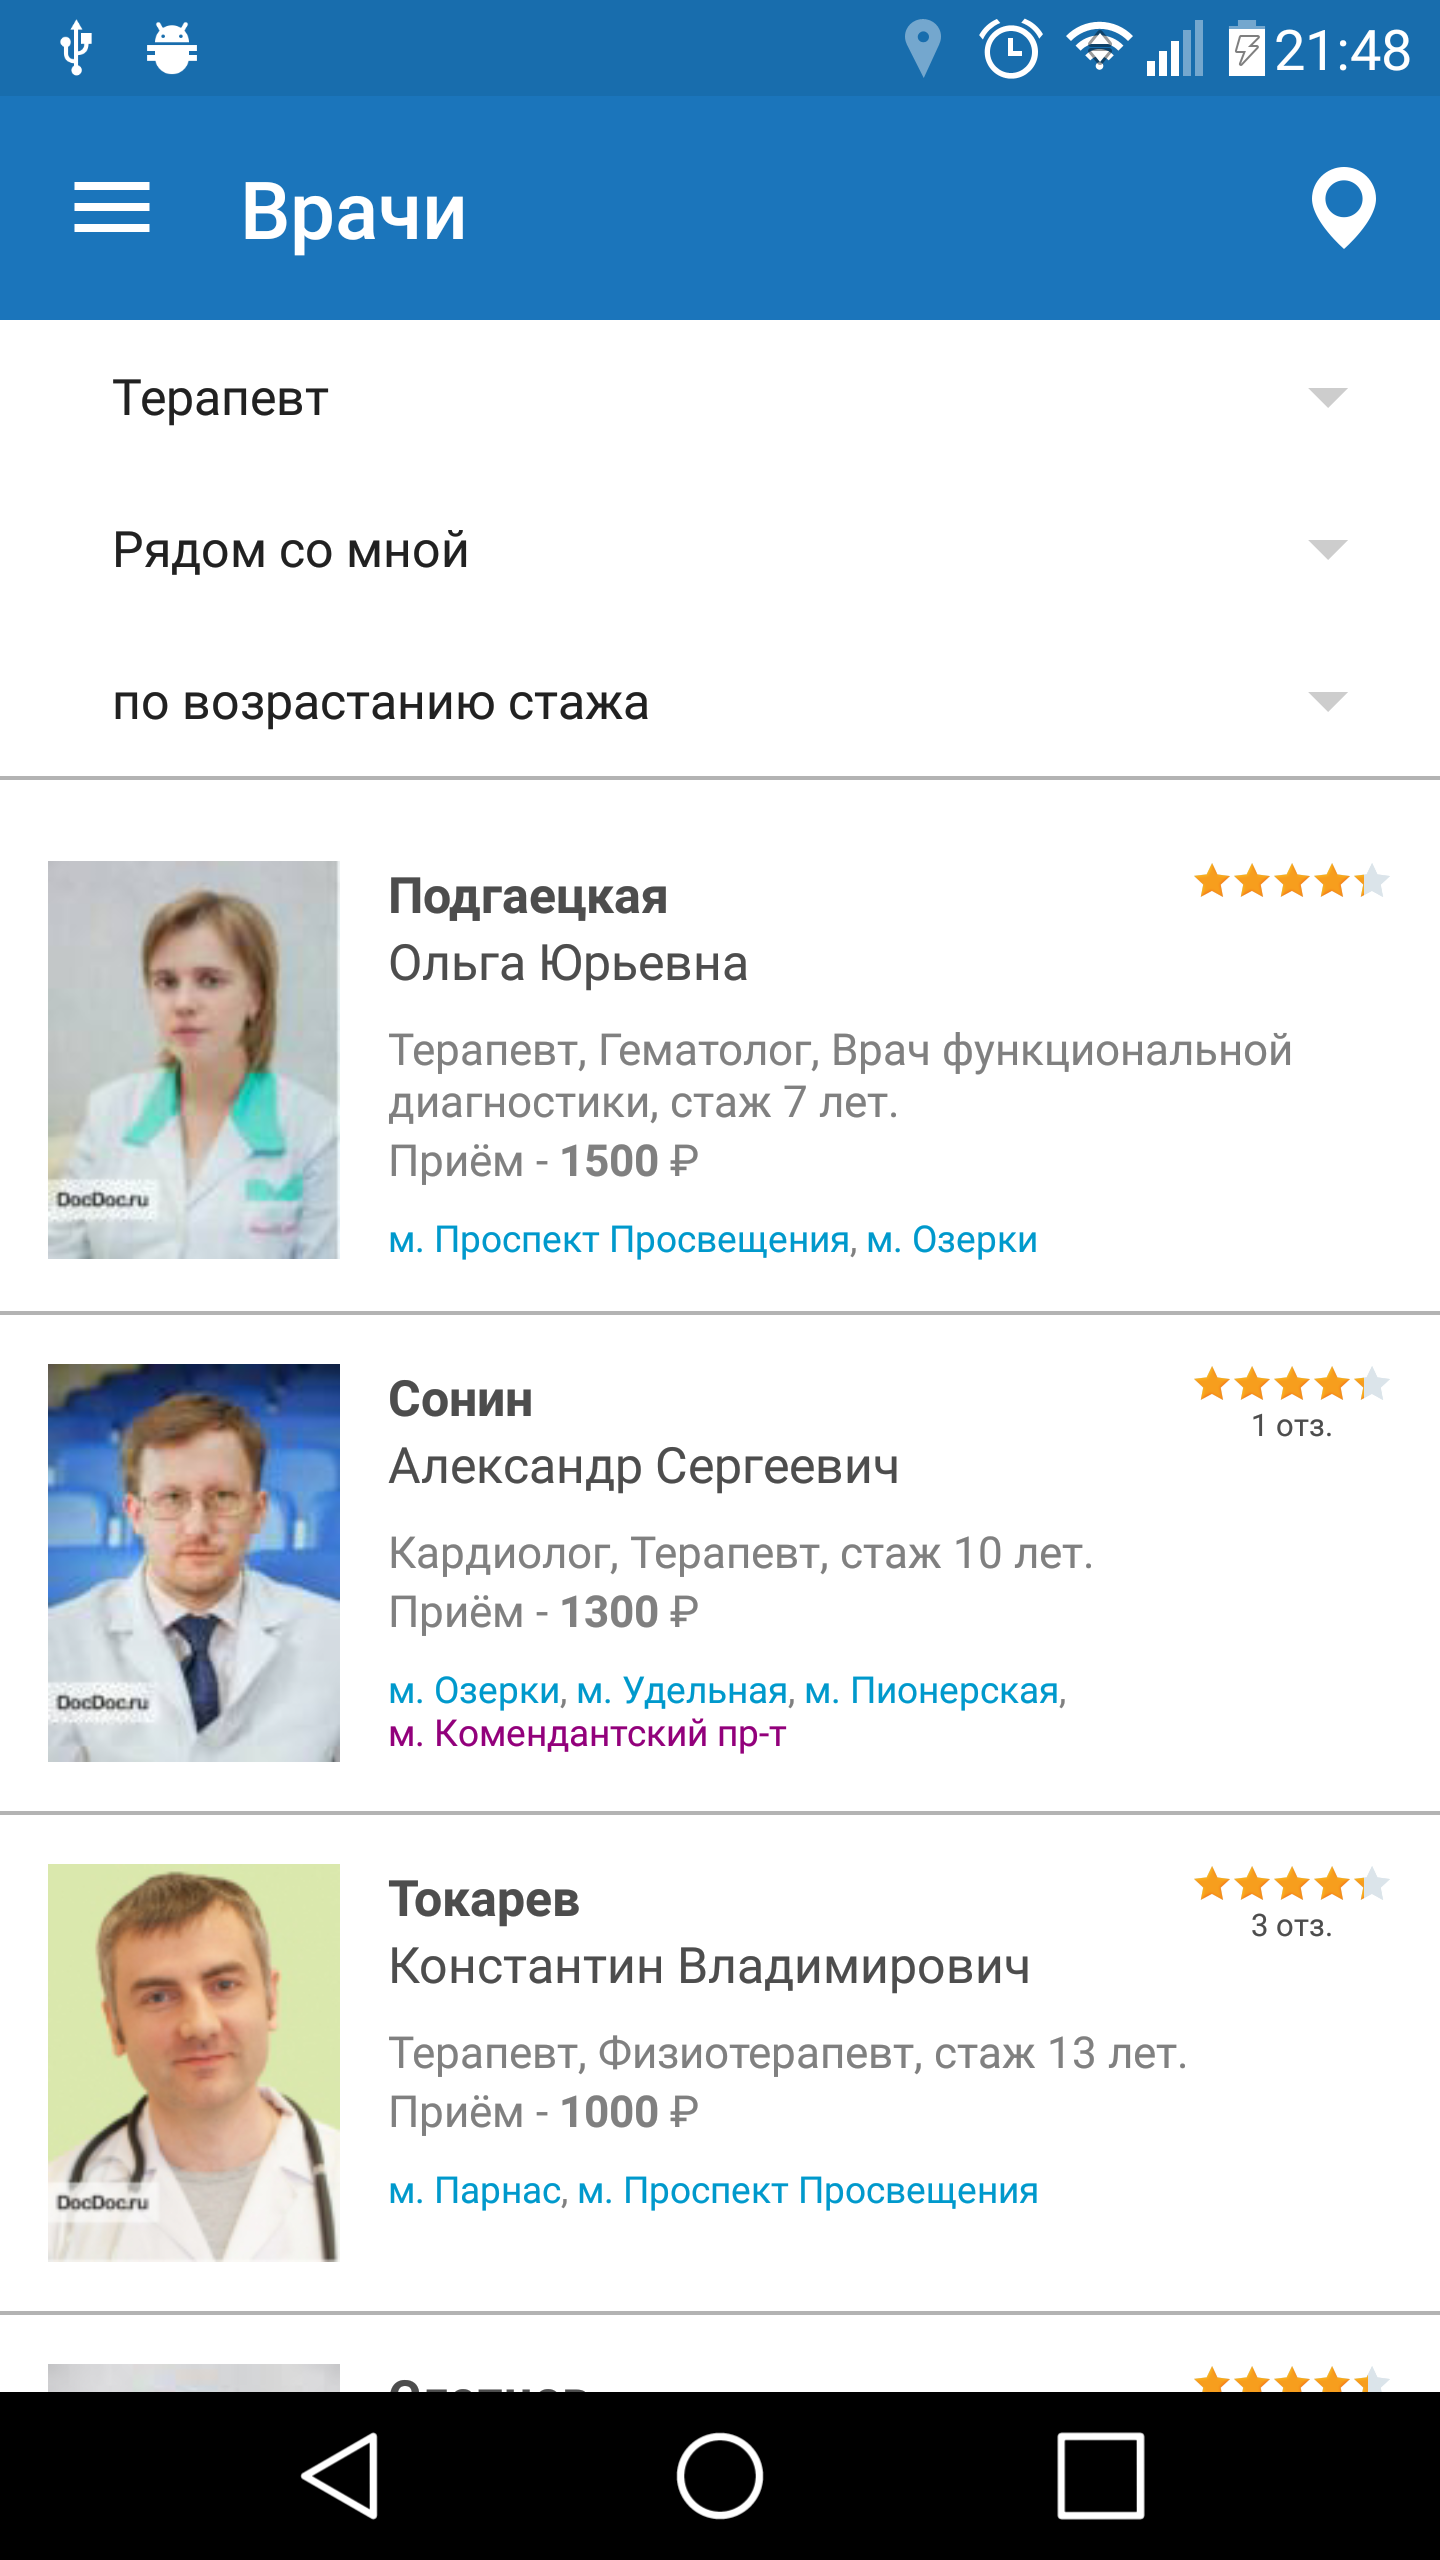 Android application Запись на прием к врачу. screenshort